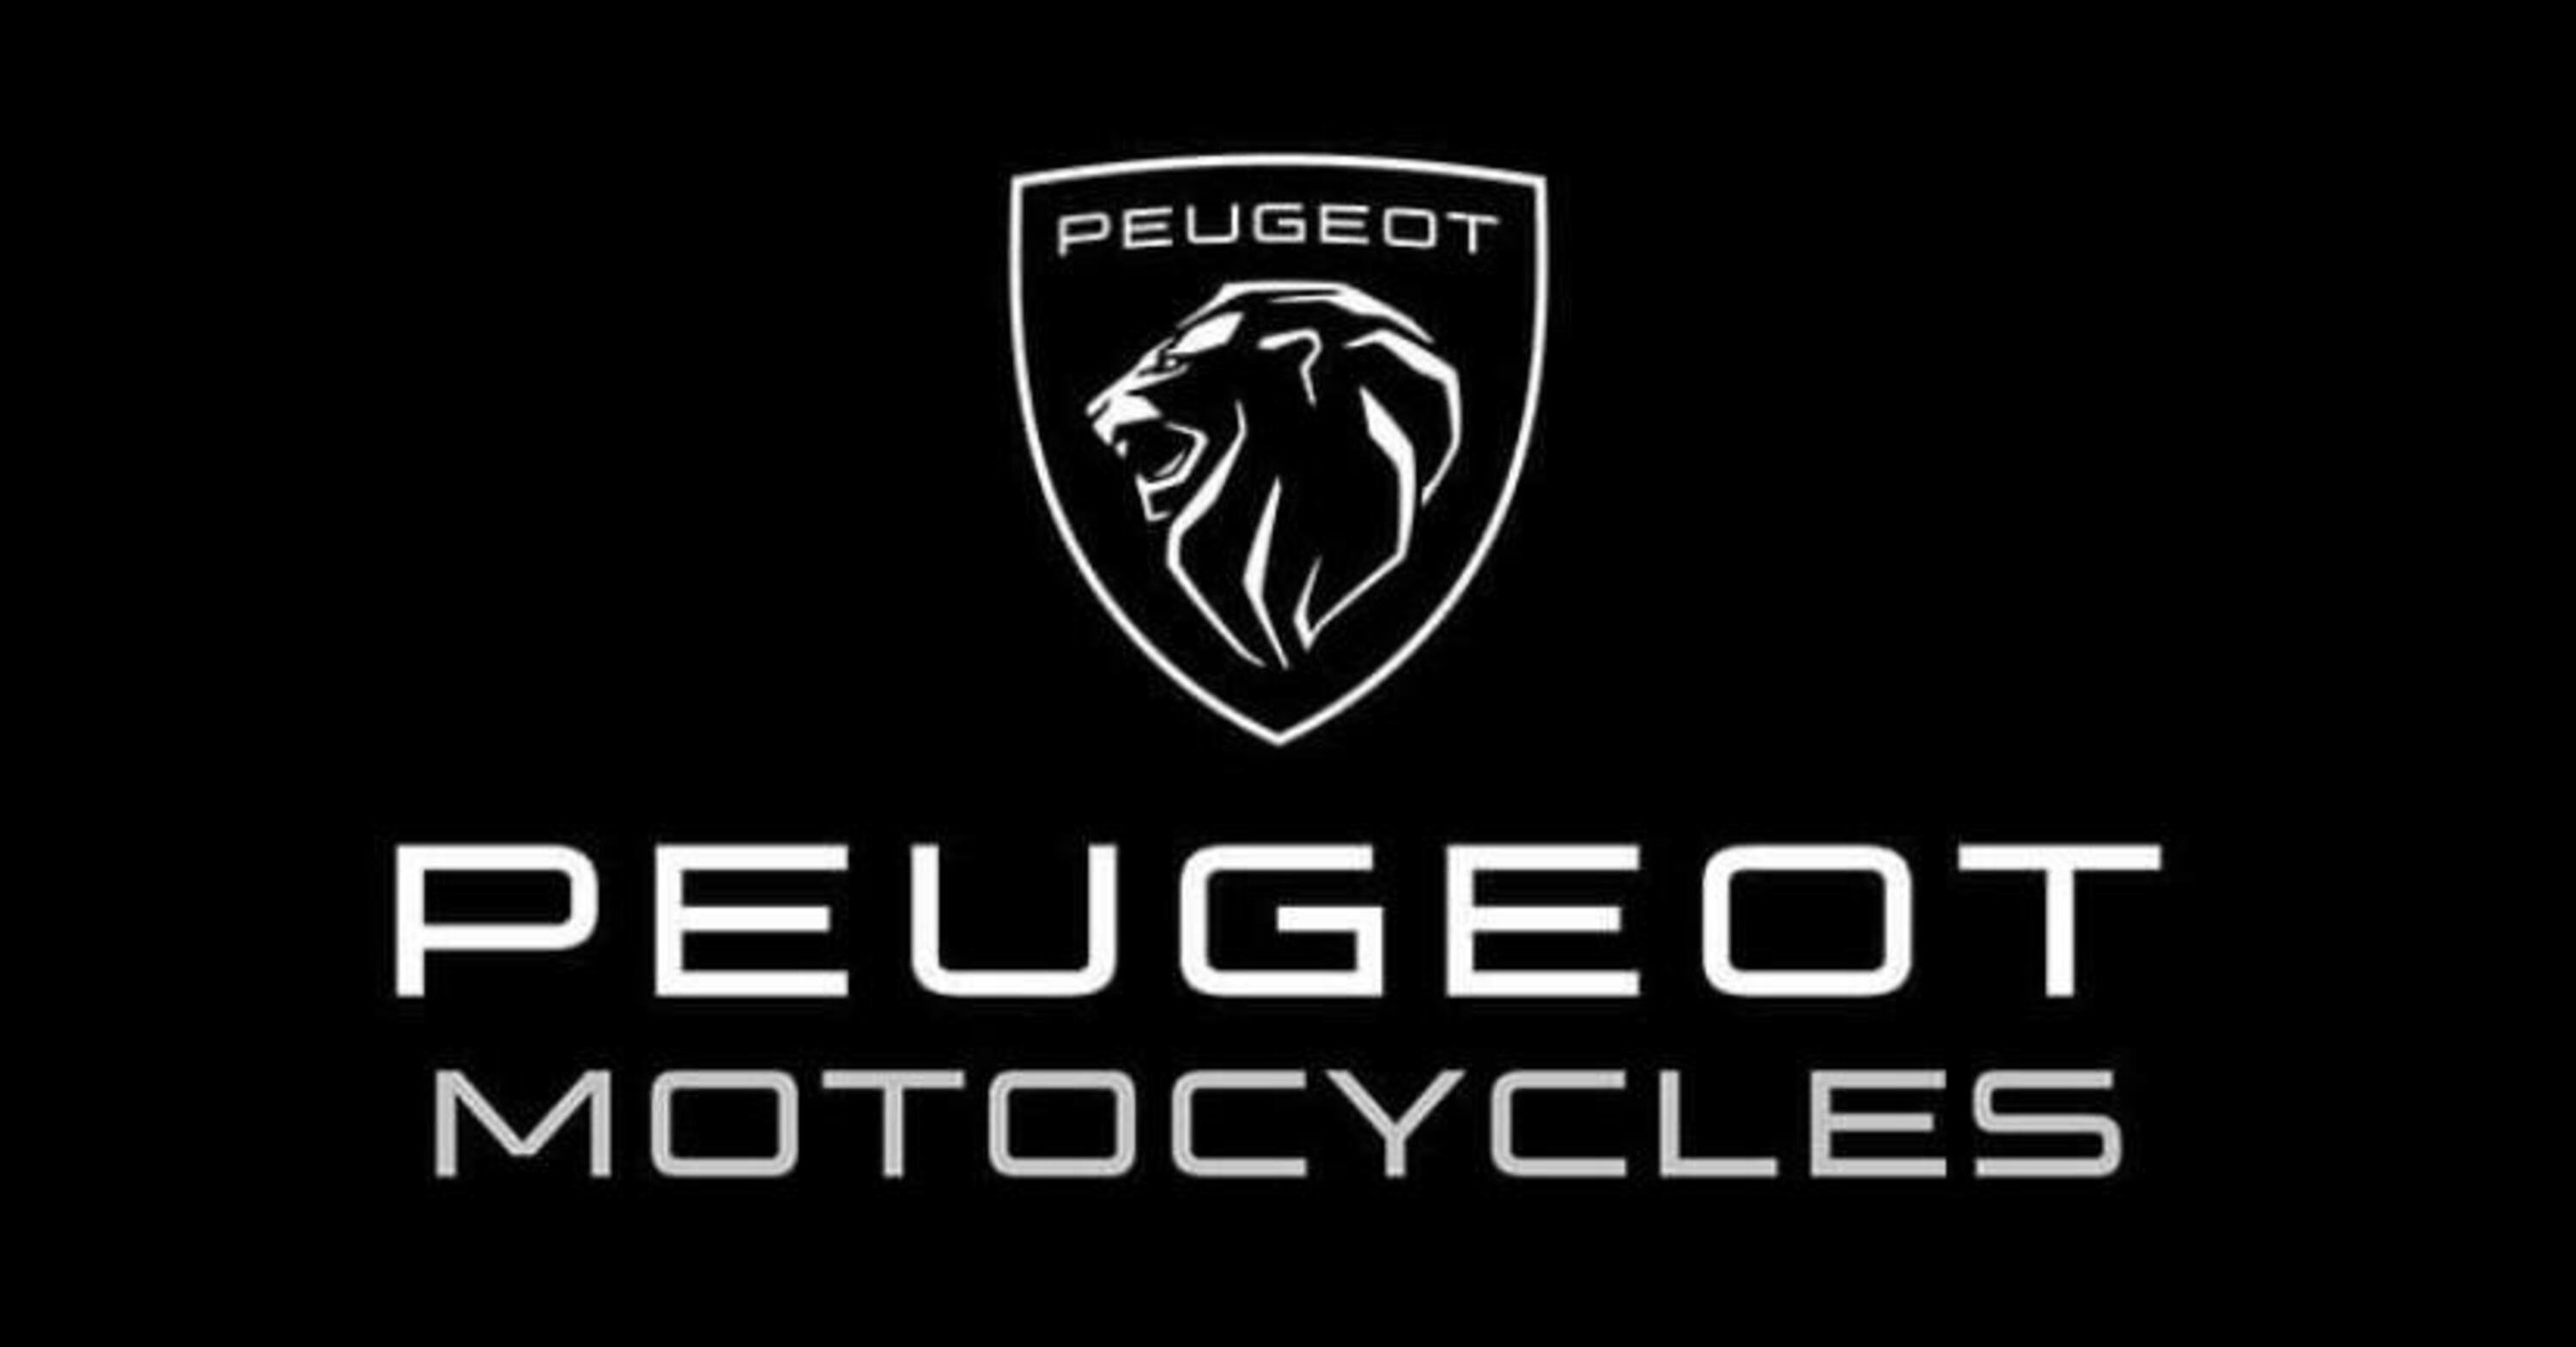 Peugeot Motorcycles ritorna sul mercato italiano. Ecco che cosa dobbiamo aspettarci